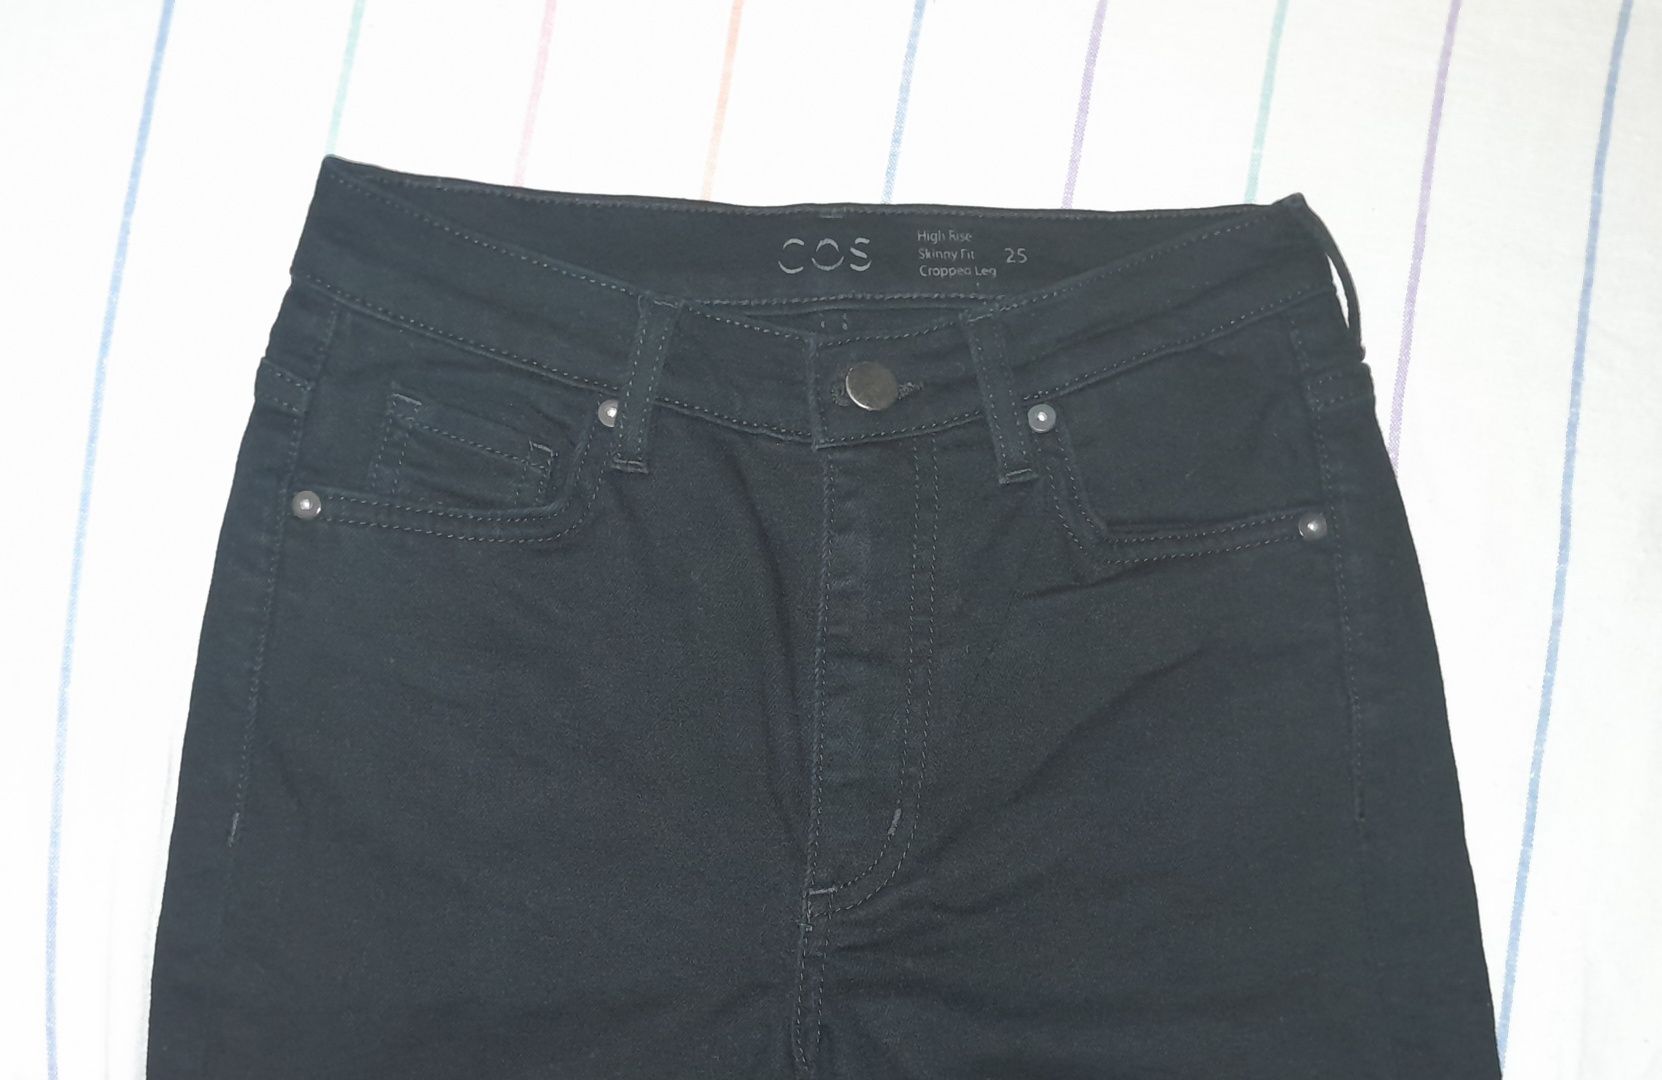 Жіночі класичні чорні джинси, розмір S